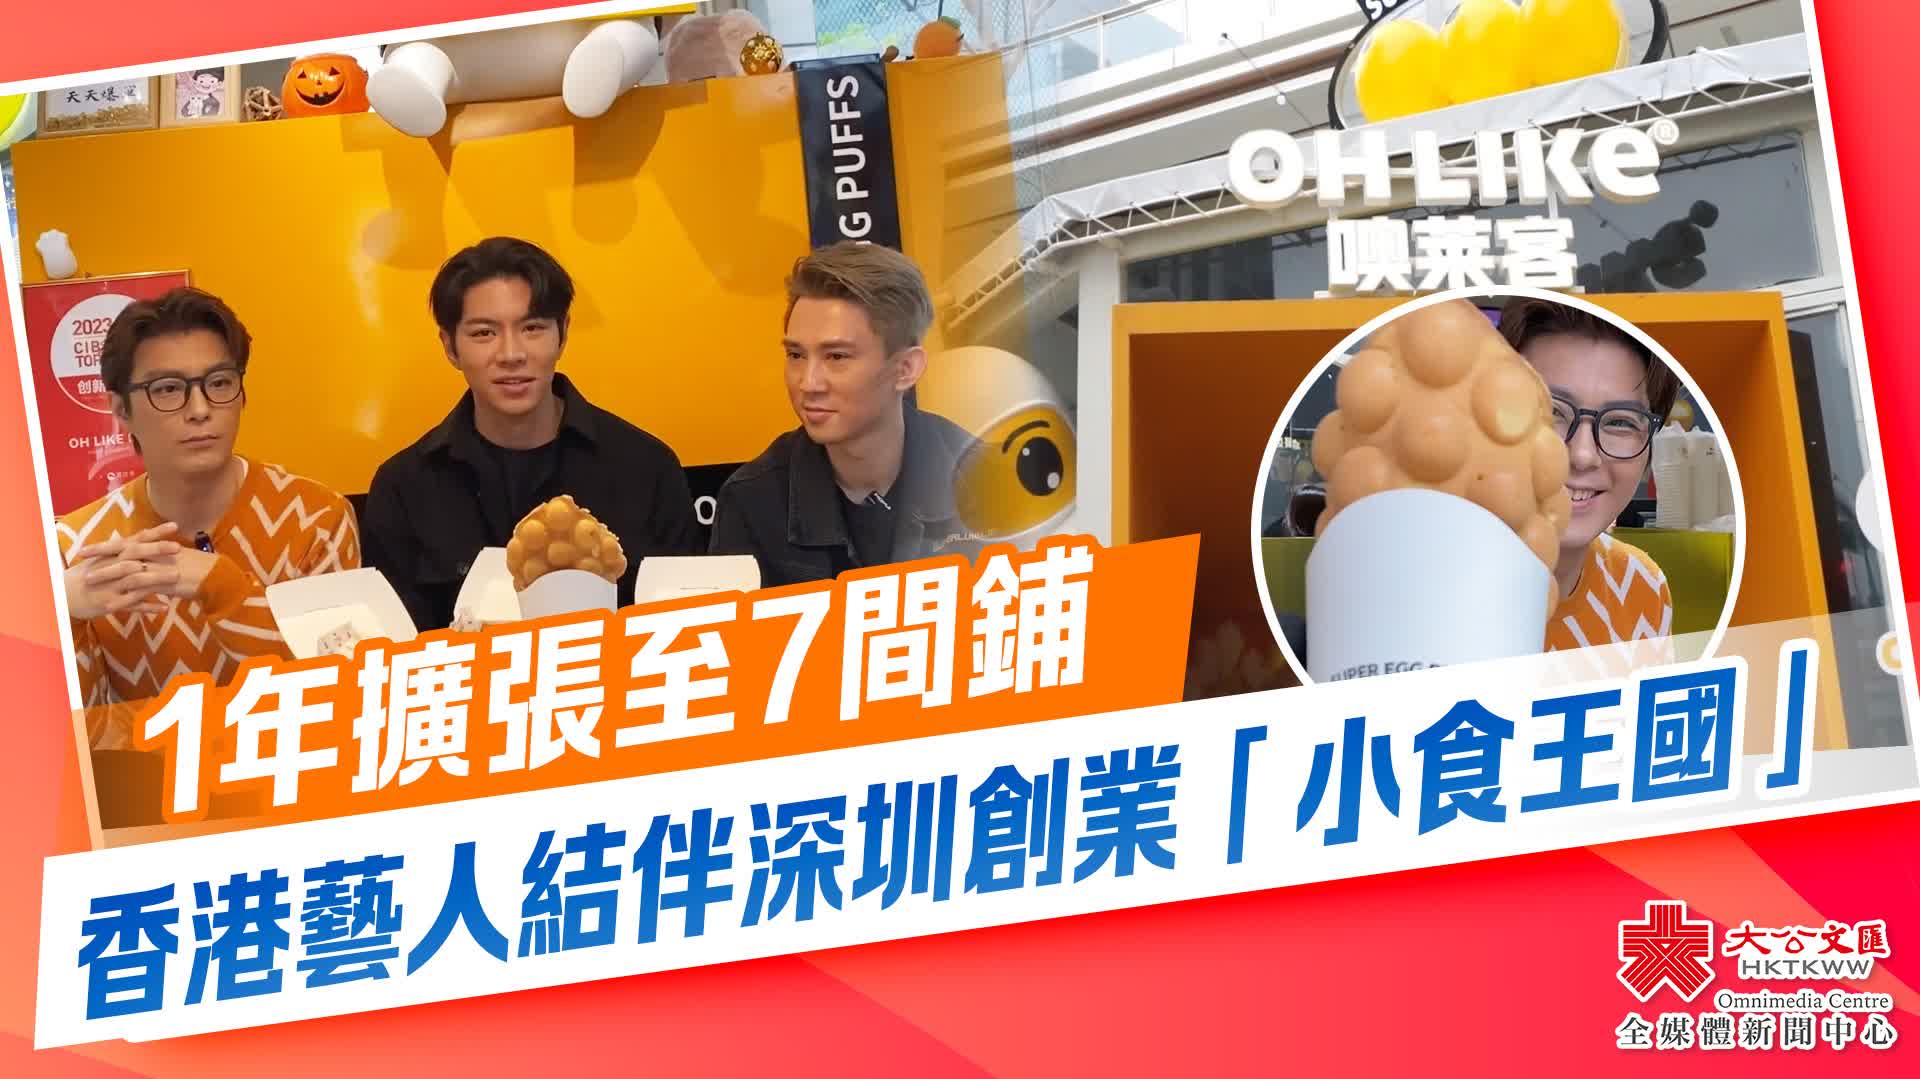 1年擴張至7間鋪　香港藝人結伴深圳創業「小食王國」